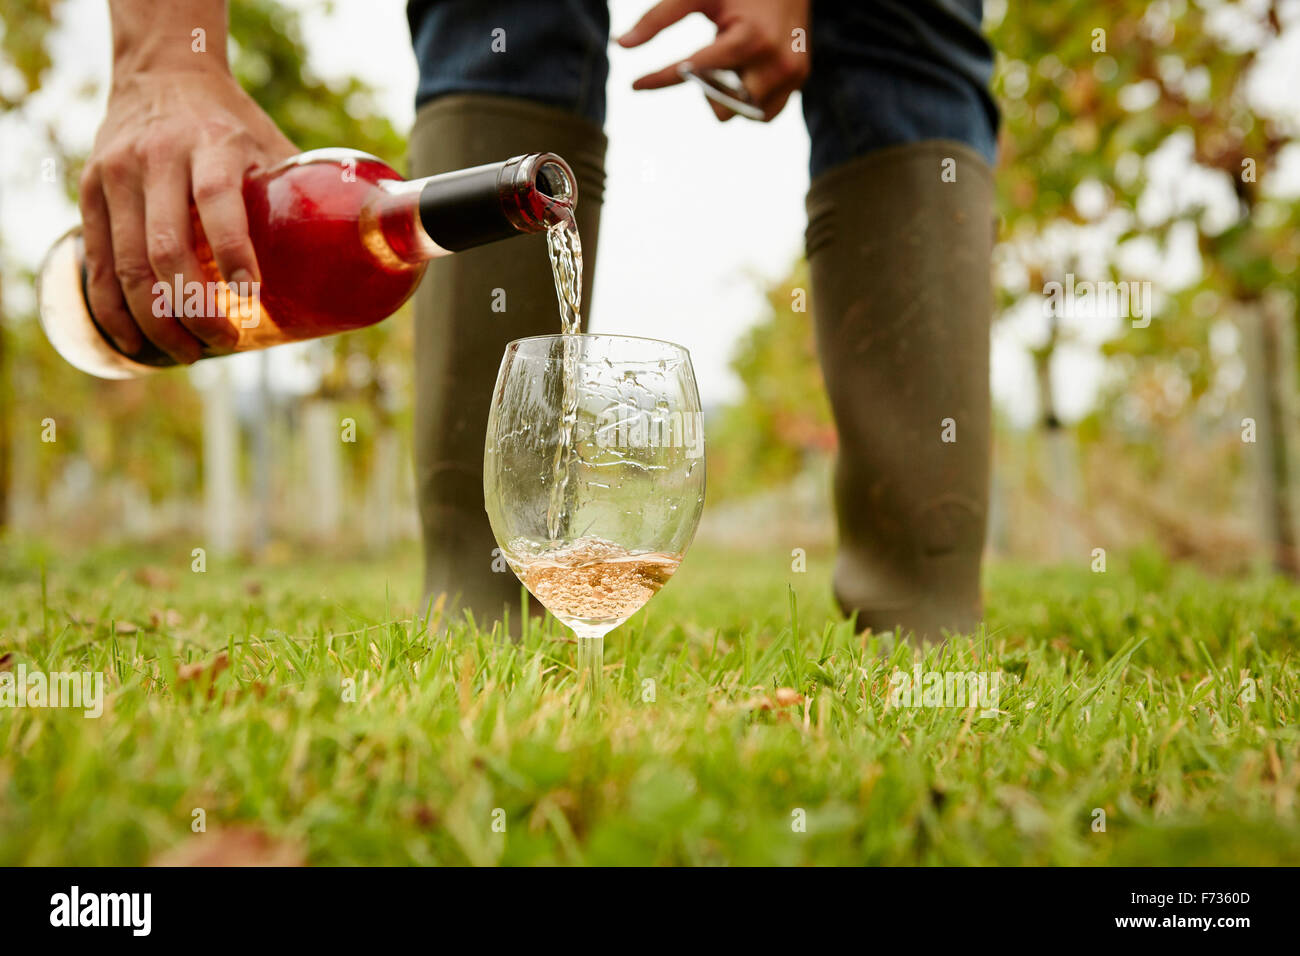 Eine Person rose Wein aus einer Flasche in ein Glas gießen. Stockfoto